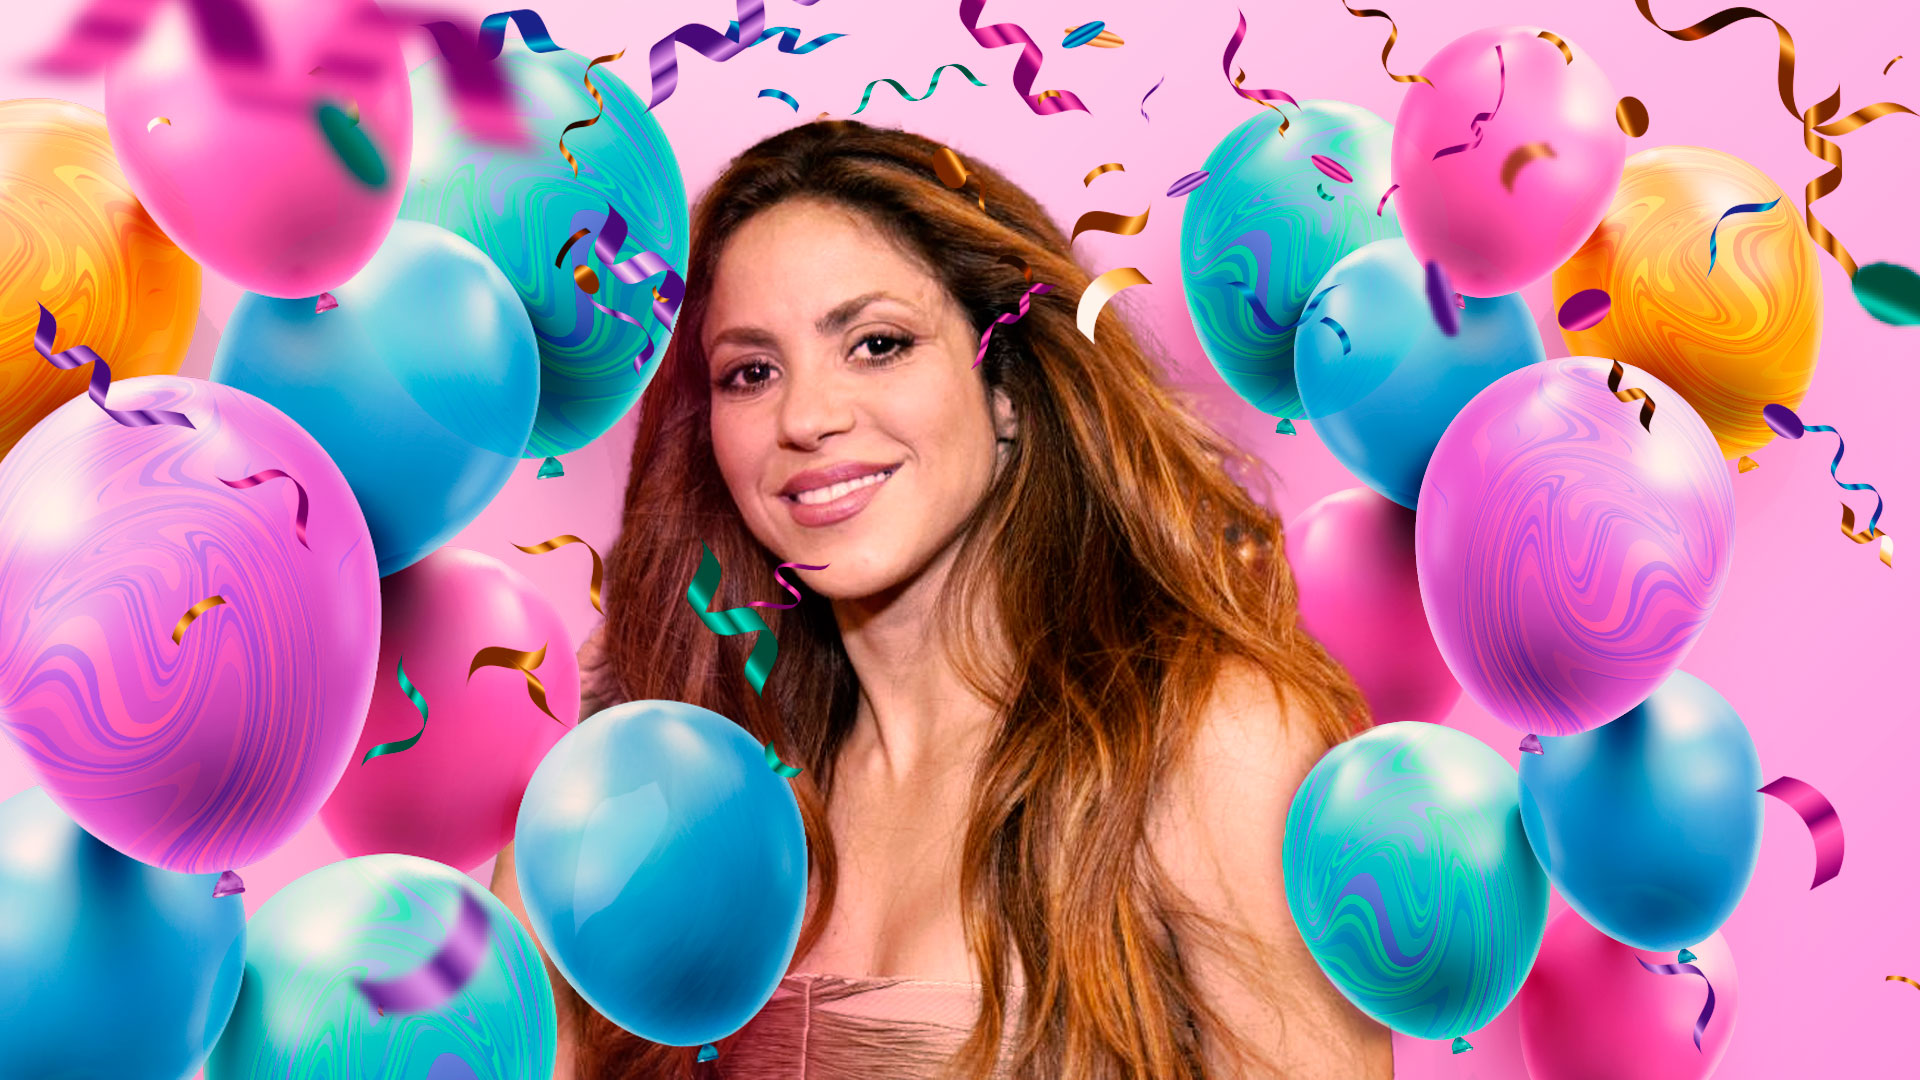 Shakira de cumpleaños: Alejandro Sanz, Bizarrap y otros famosos felicitaron a la colombiana